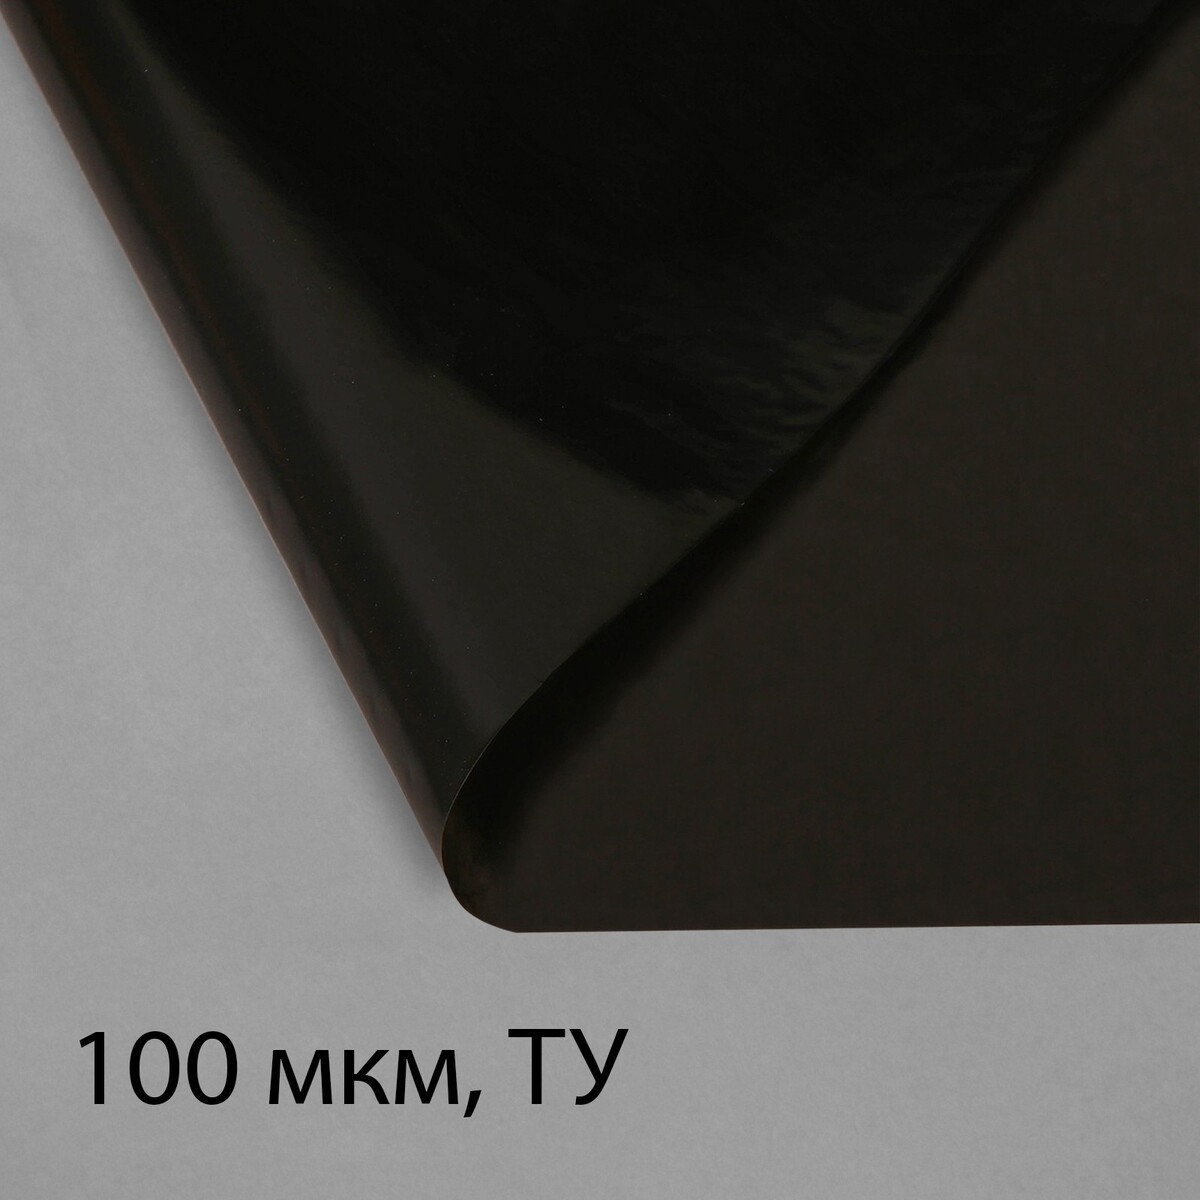 Пленка полиэтиленовая, техническая, 100 мкм, черная, длина 10 м, ширина 3 м, рукав (1.5 м × 2), эконом 50%, greengo